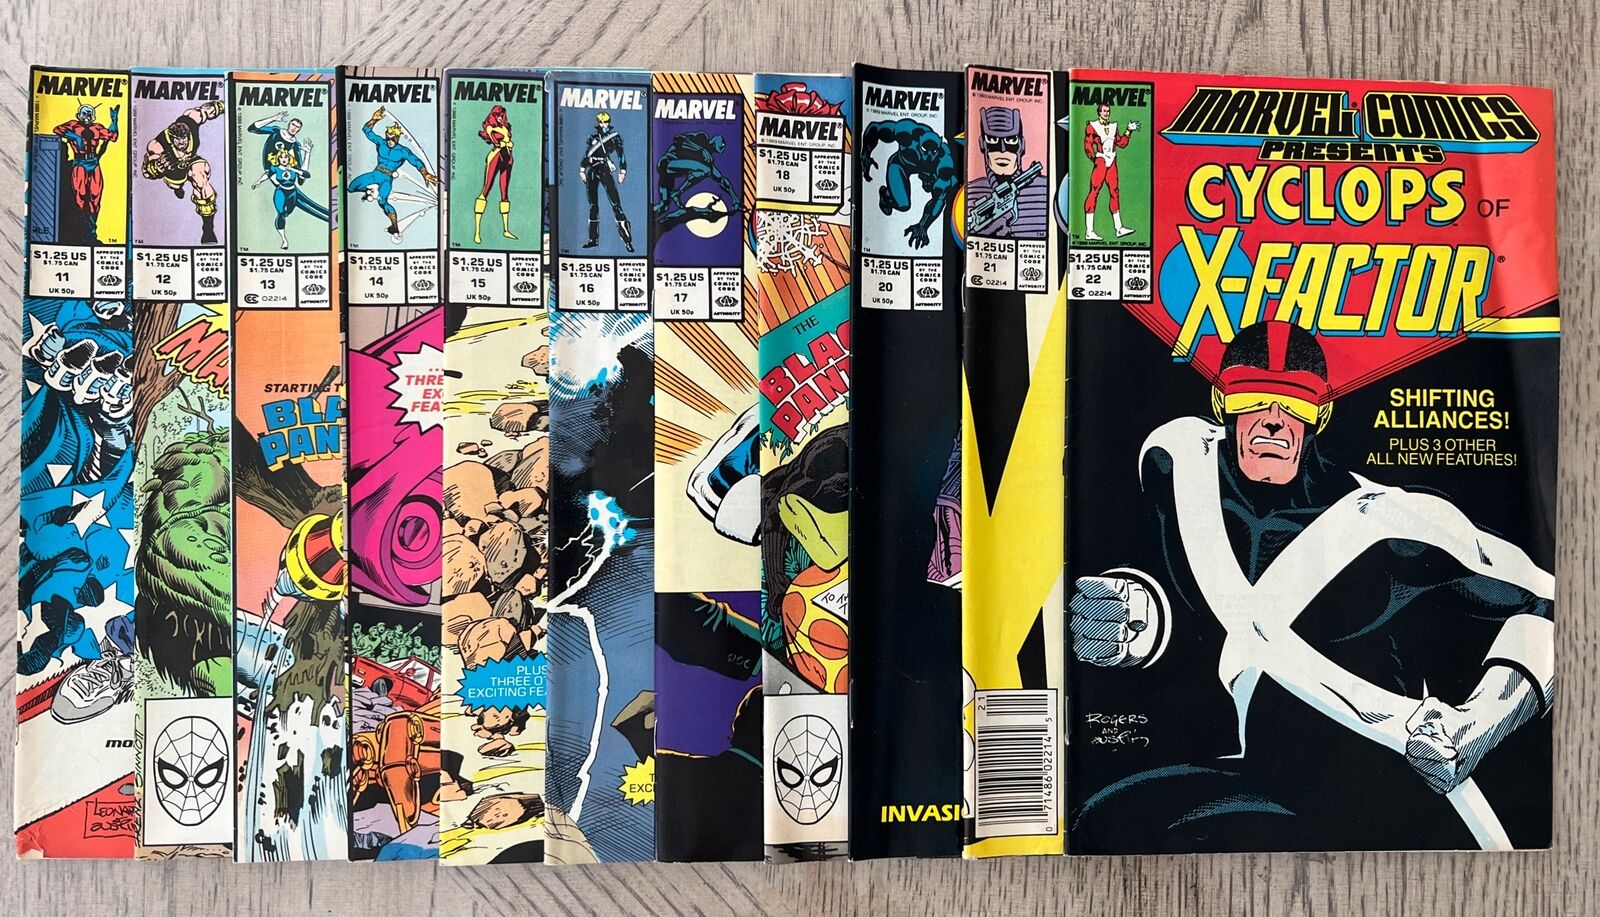 Lot Of 11 Marvel Comics Present Colossus Cyclops 1988 # 11-22, No #19